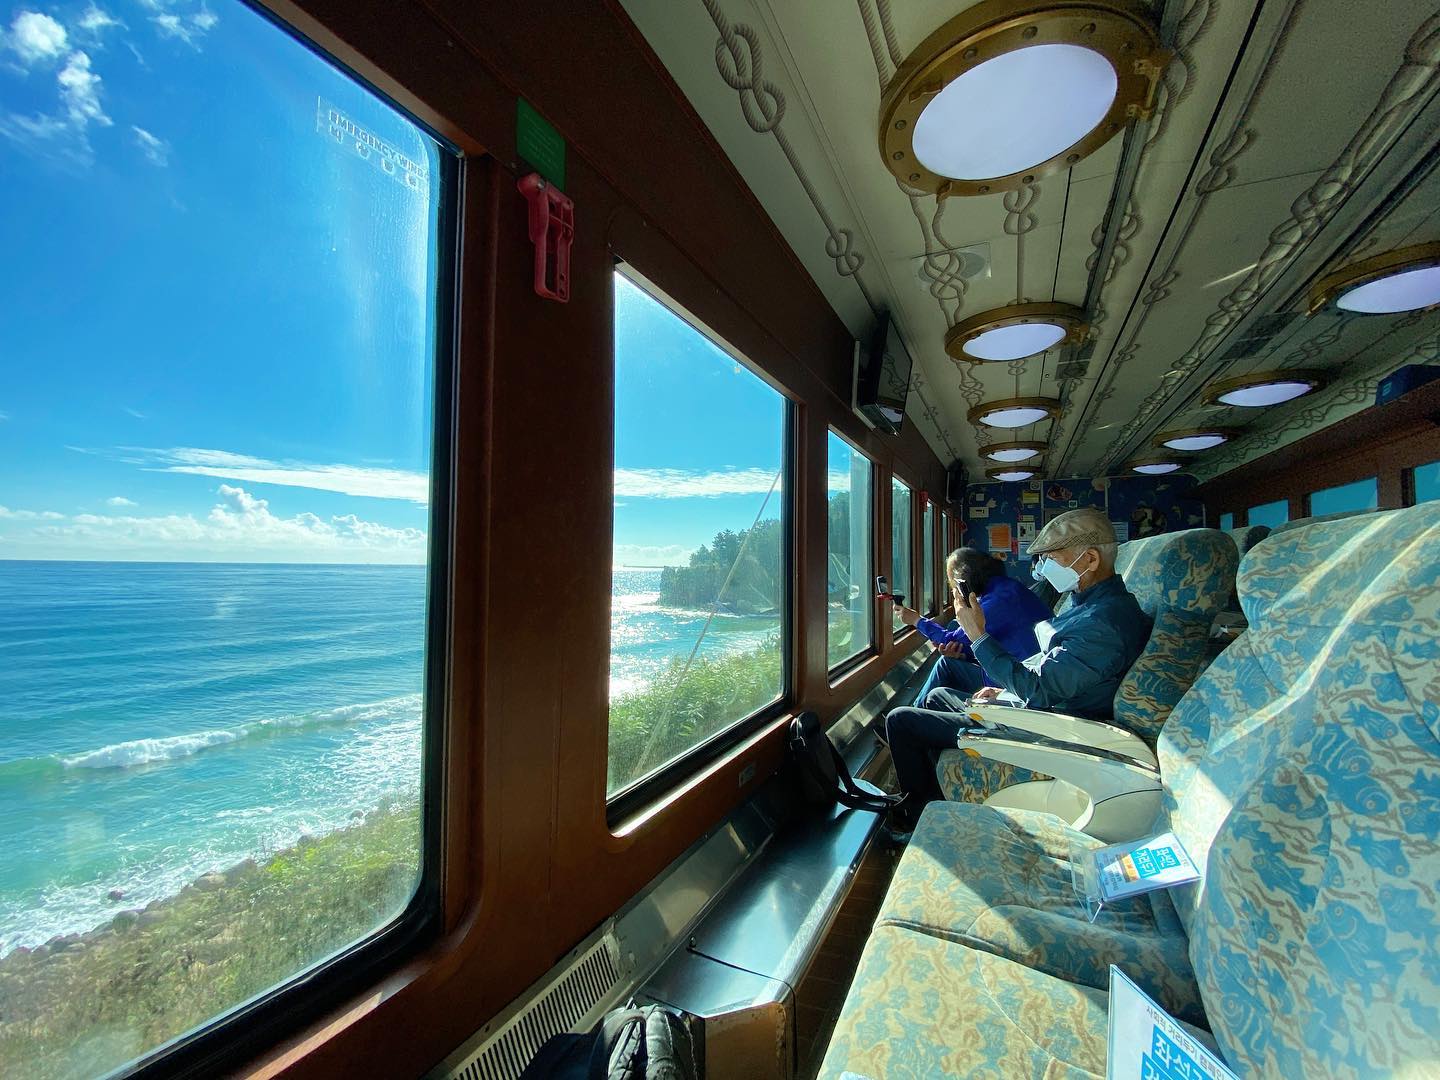 Scenic Train Rides in Asia - Seats facing the ocean in Korea's Sea Train